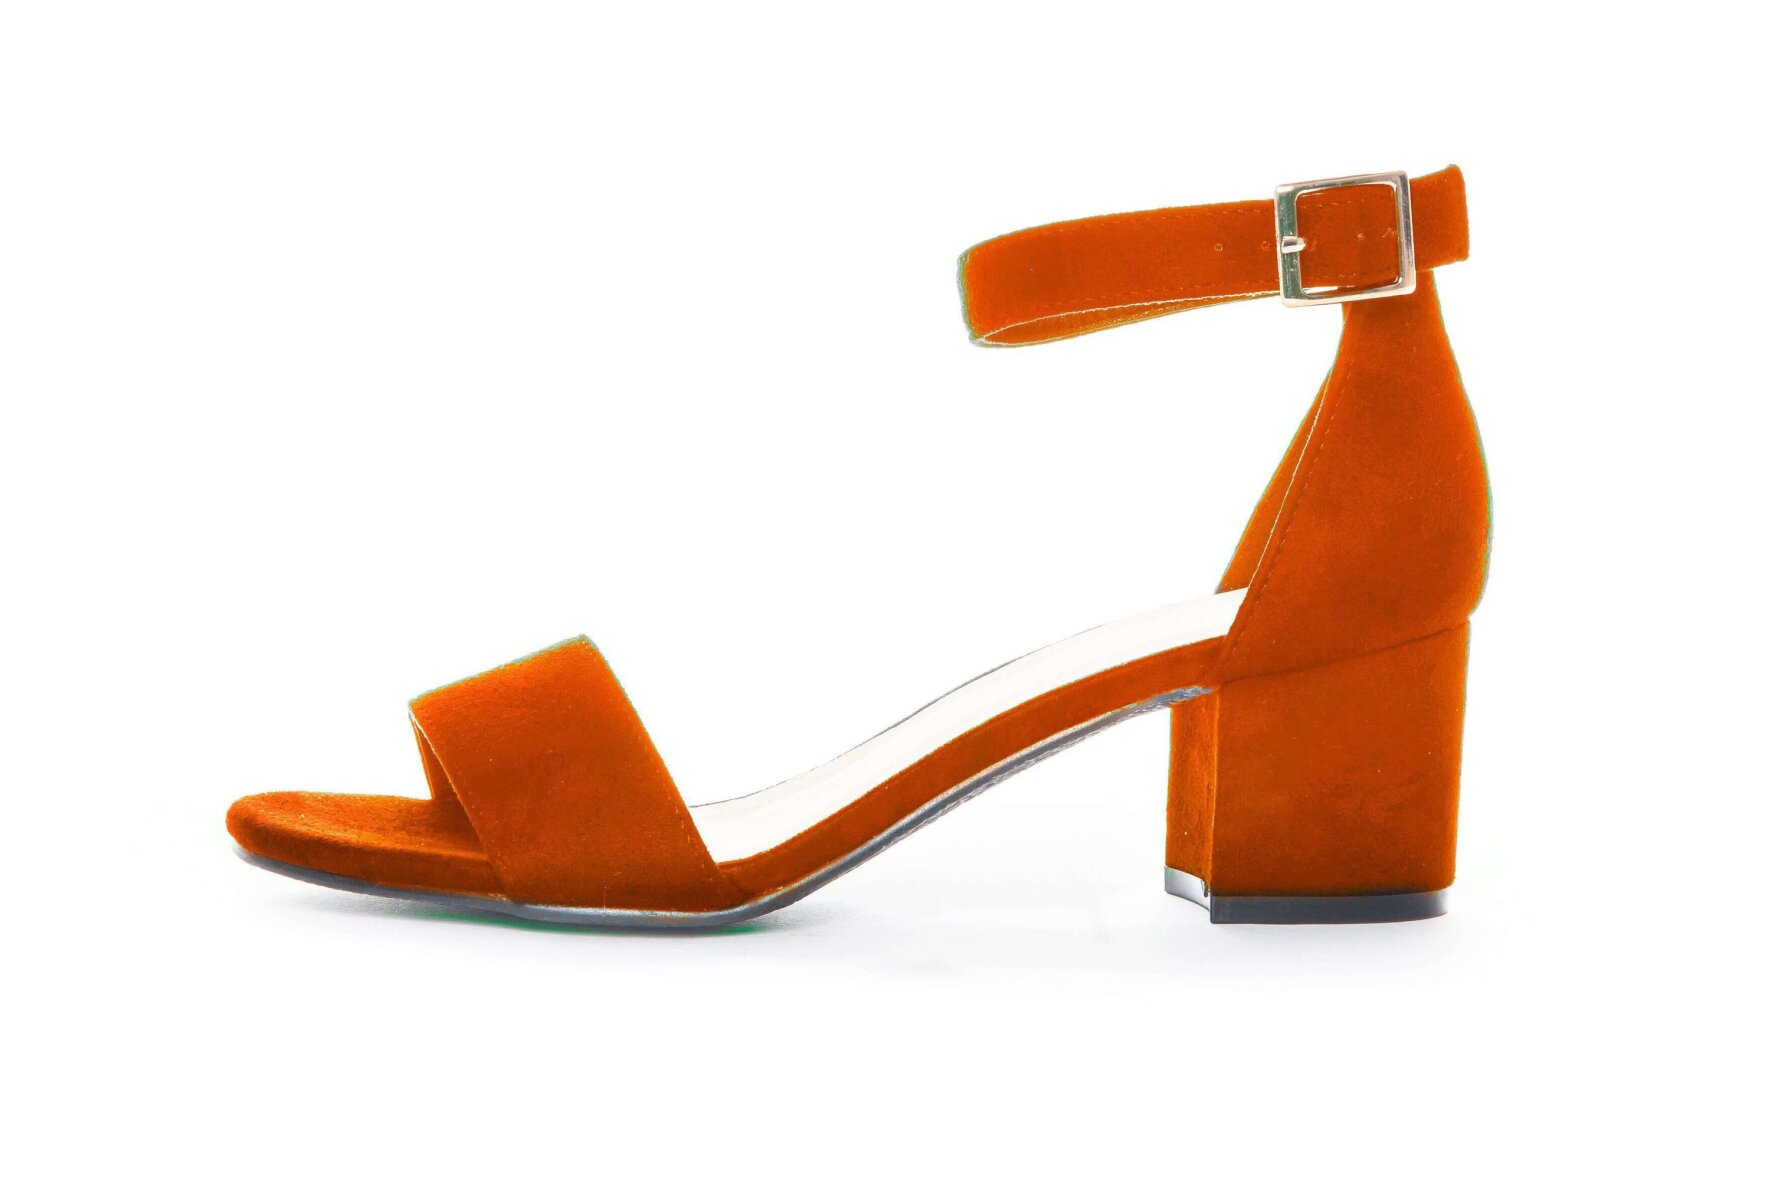 Agnes Gray Overlegenhed filthy Duffy sandal orange med 5 cm blokhæl 97-18551 - ButikSØS